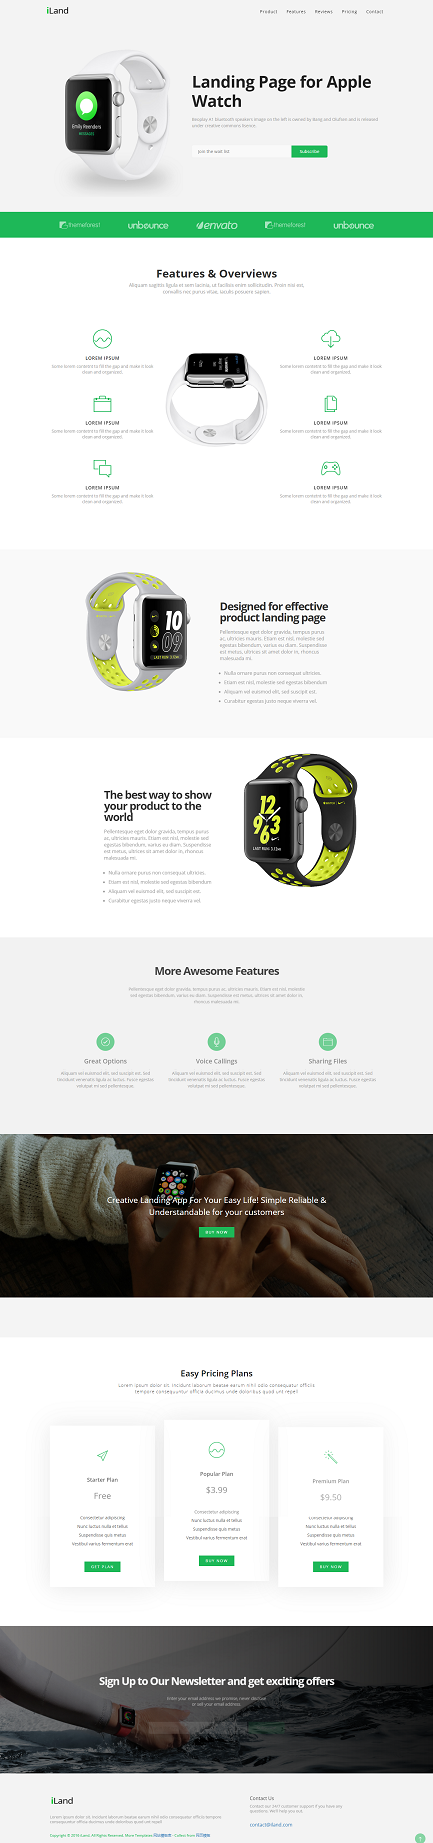 简洁酷炫智能手表产品展示宣传类网站模板